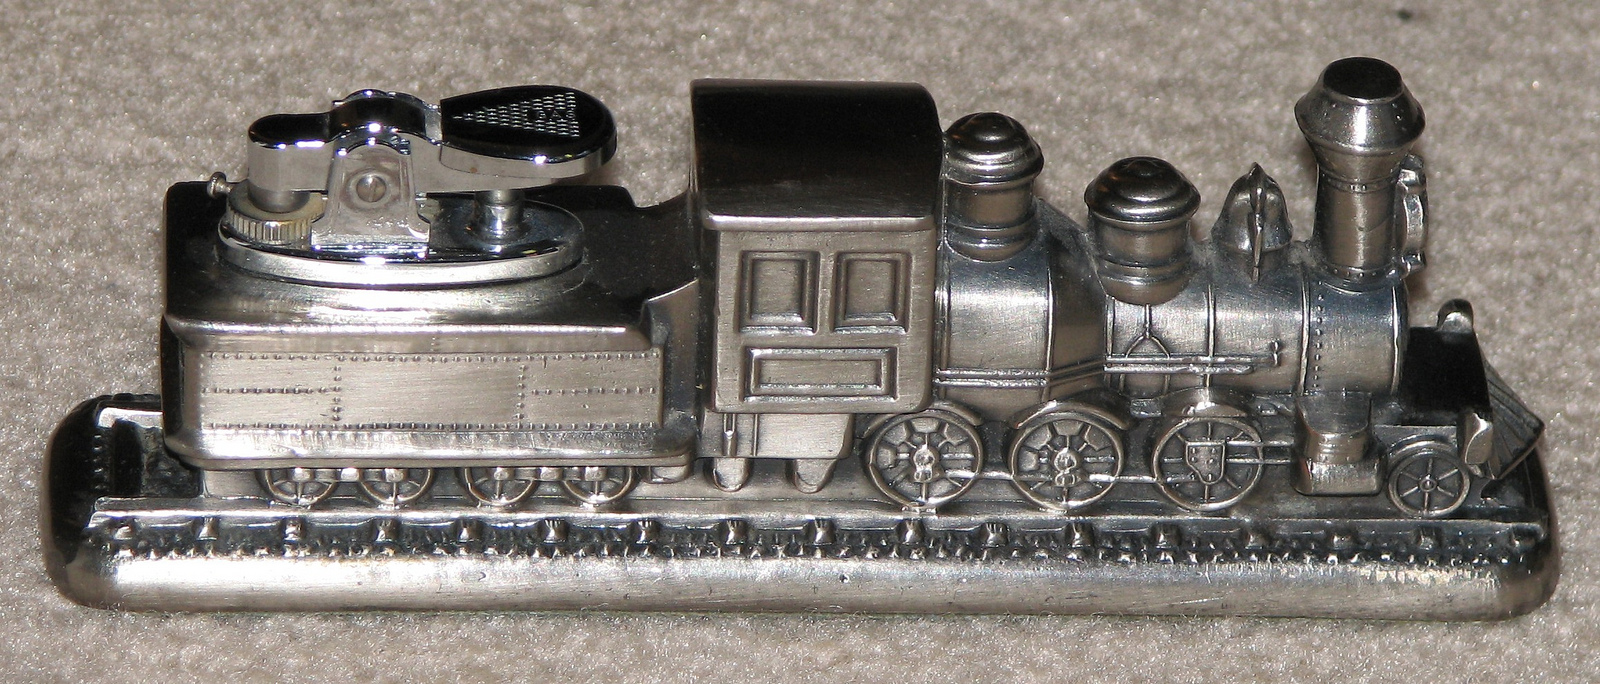 A train novelty lighter